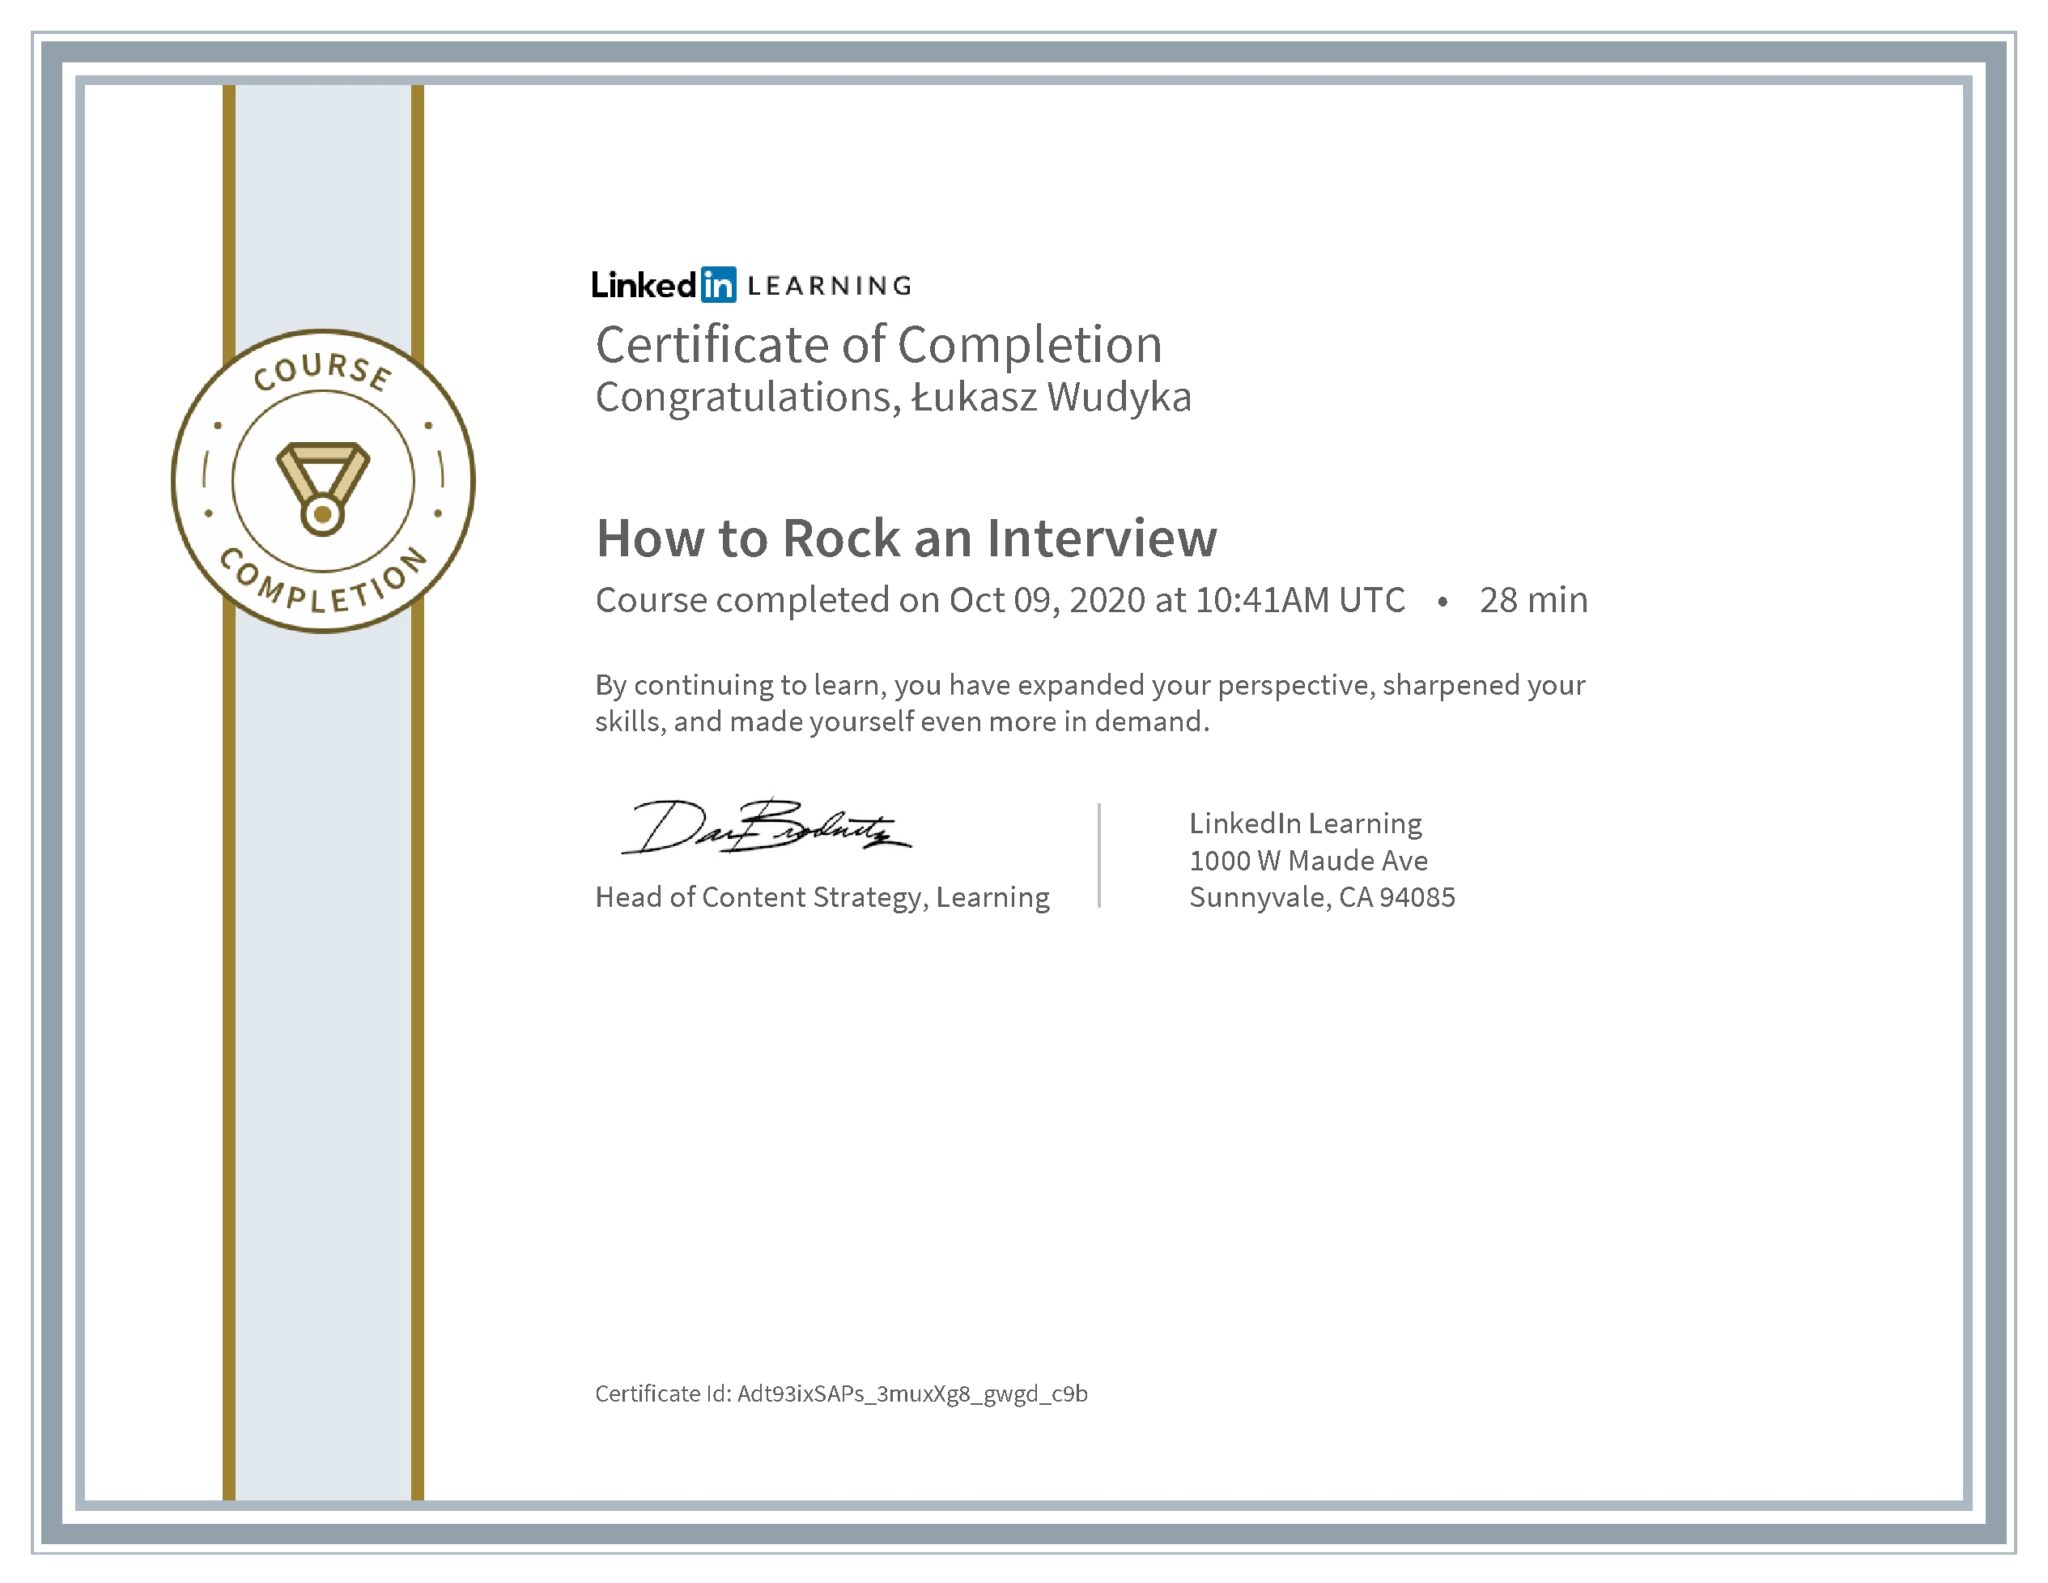 Łukasz Wudyka certyfikat LinkedIn How to Rock an Interview